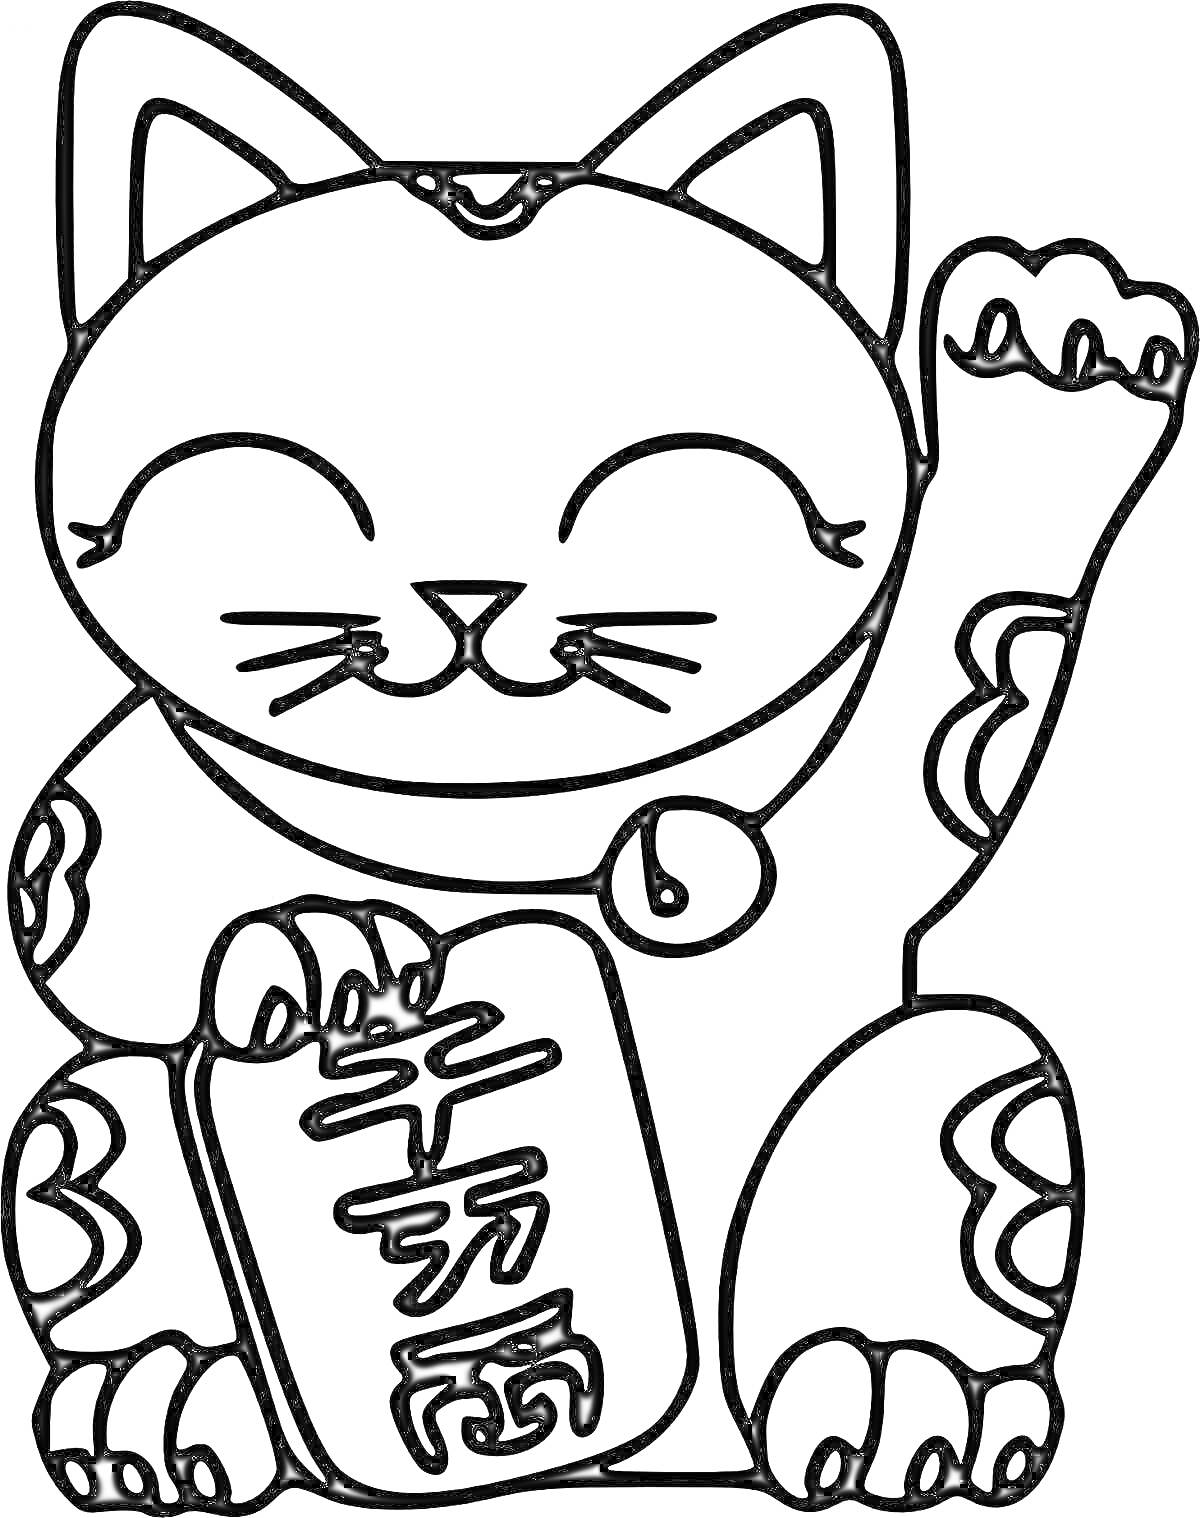 Раскраска Кот-талисман с медальоном и табличкой с иероглифами